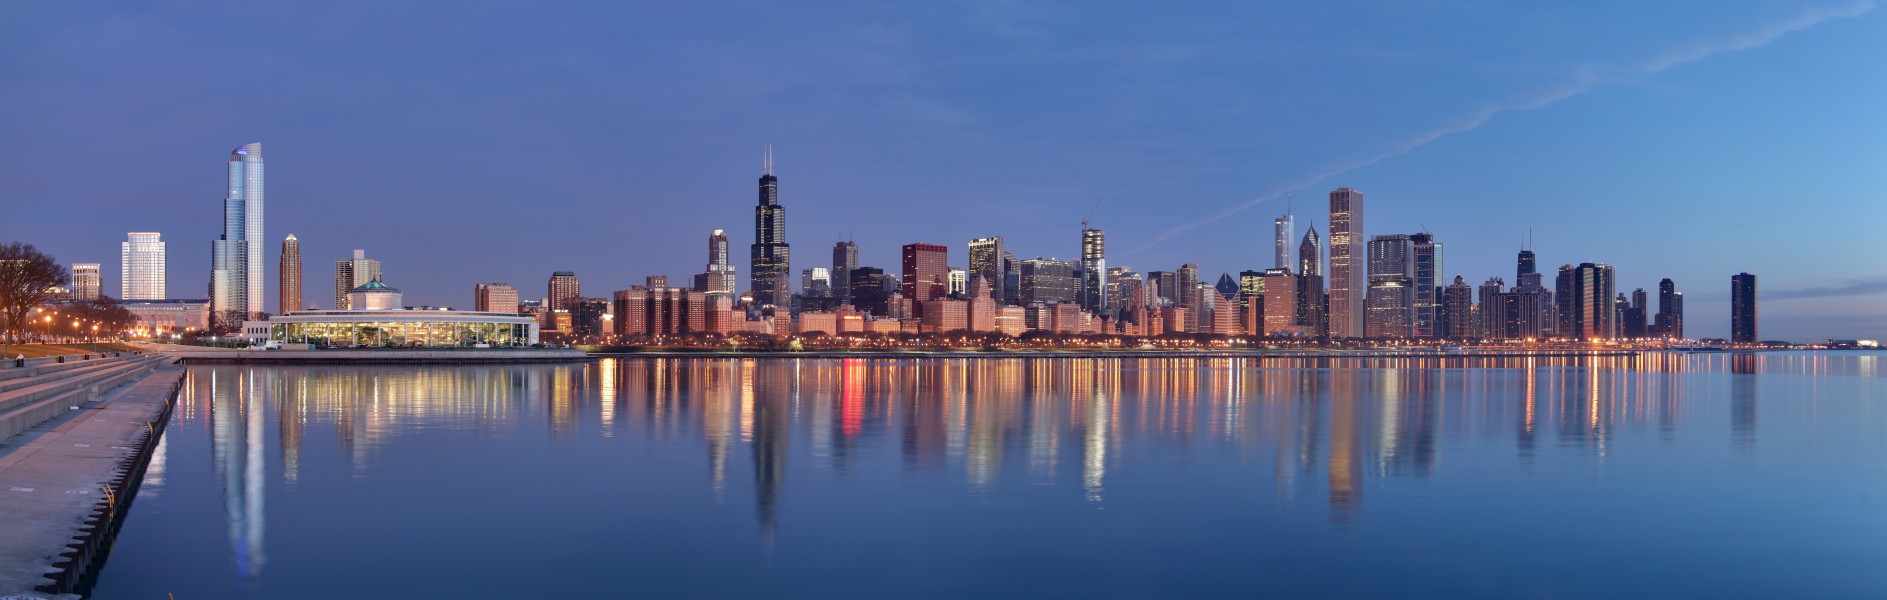 Chicago sunrise 1